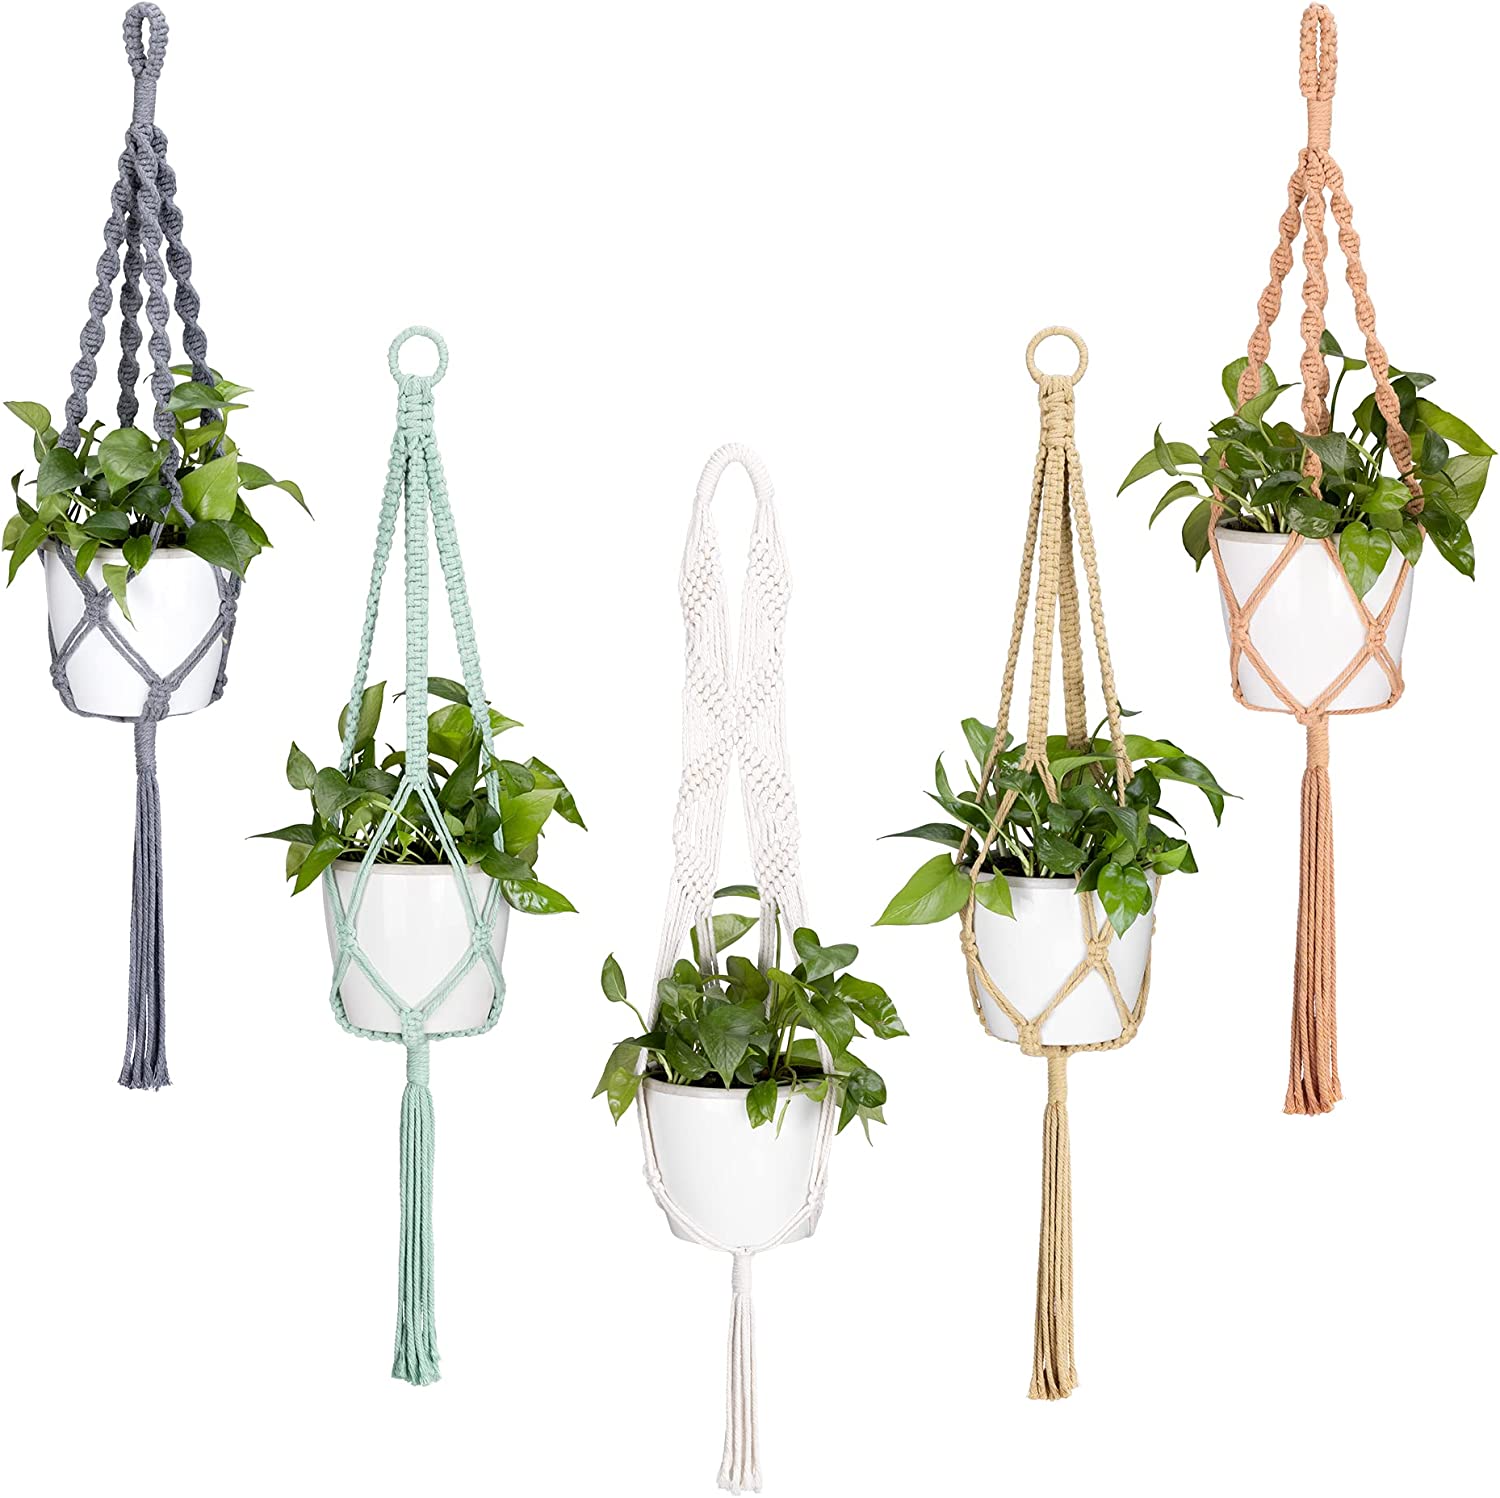 Macrame Plant Hangers (Set of 5) - Macrame Plant Hanger Set Cotton Pot Holder for Hanging Plants Indoor 